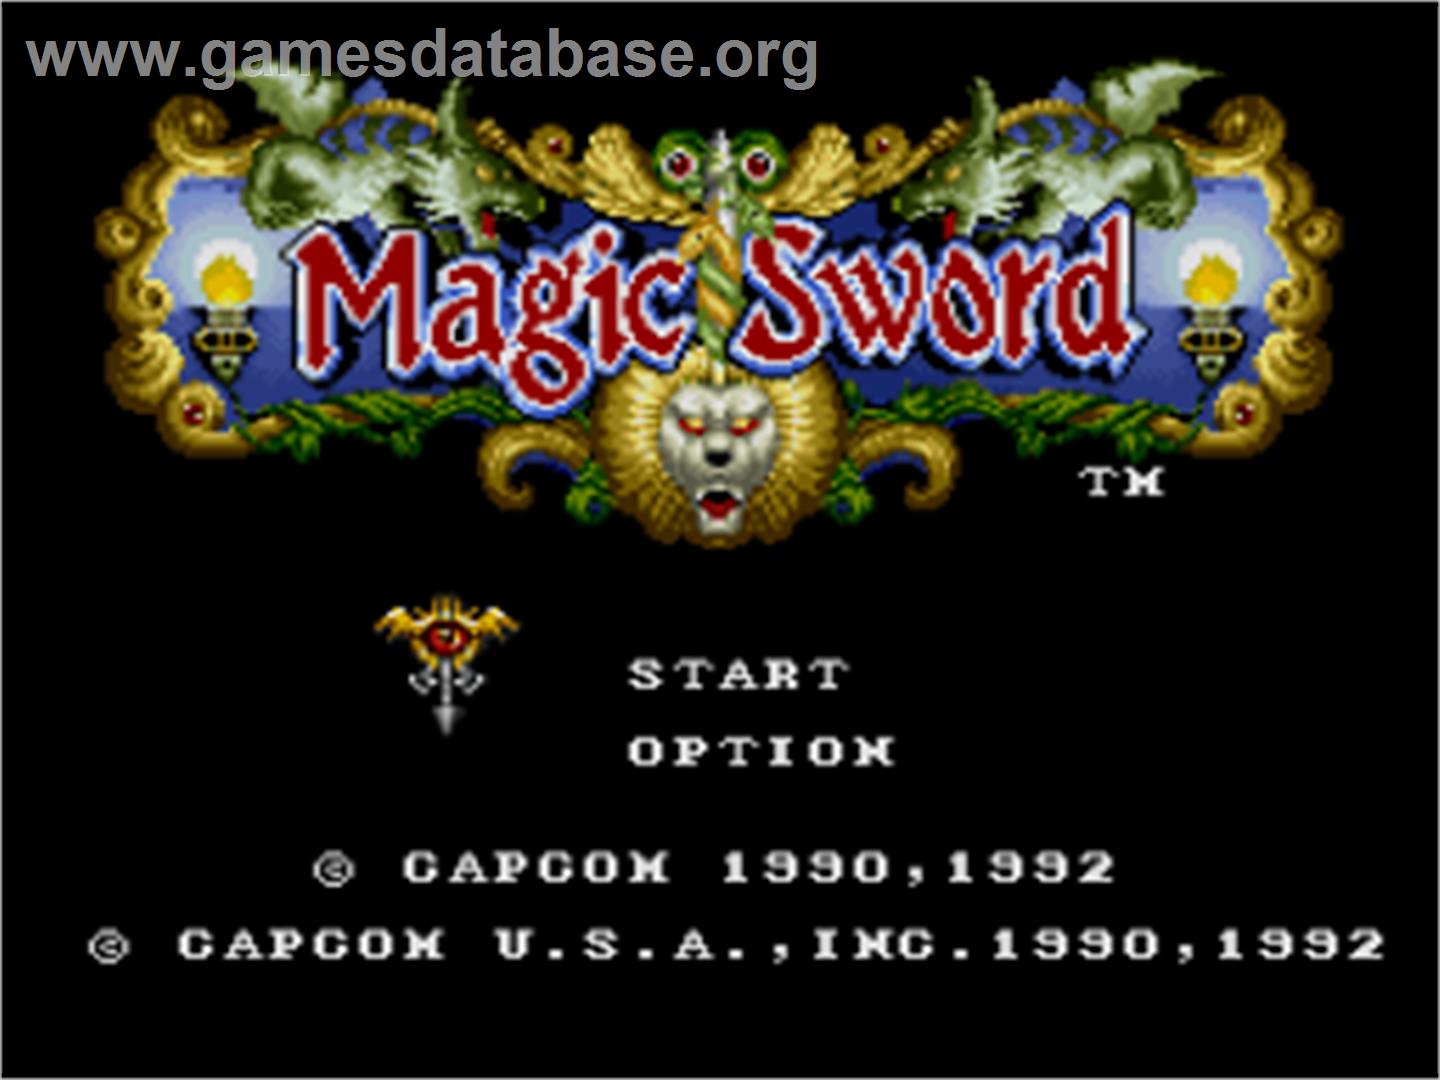 Magic Sword - Nintendo SNES - Artwork - Title Screen